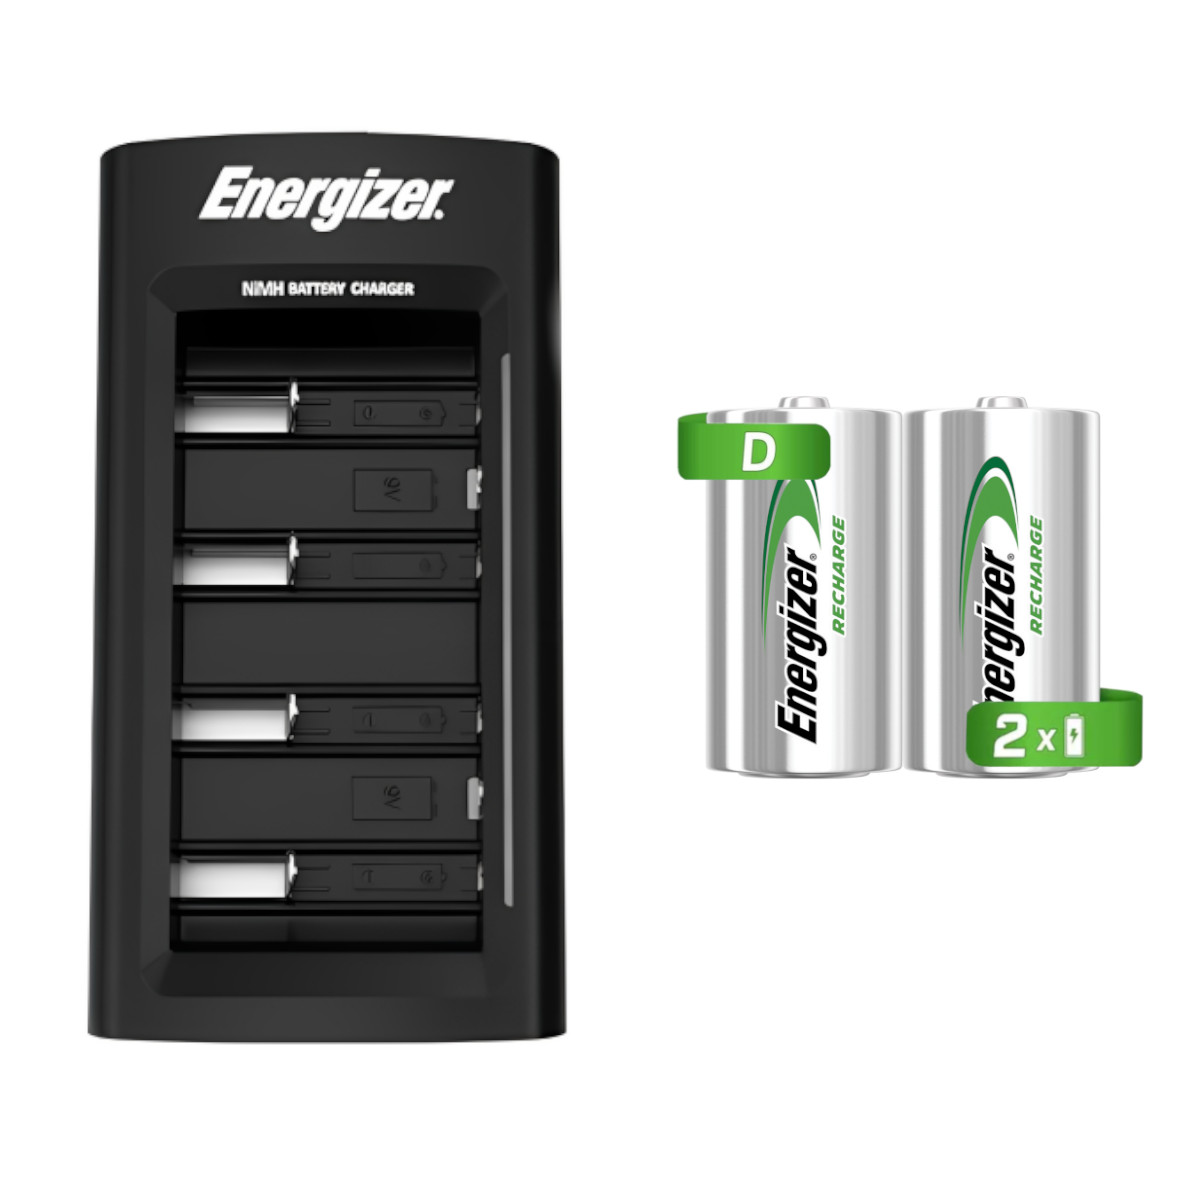 ▷ Chollo Cargador de pilas everActive de carga rápida para 2 baterías por  sólo 9,55€ ¡Valoraciones top!